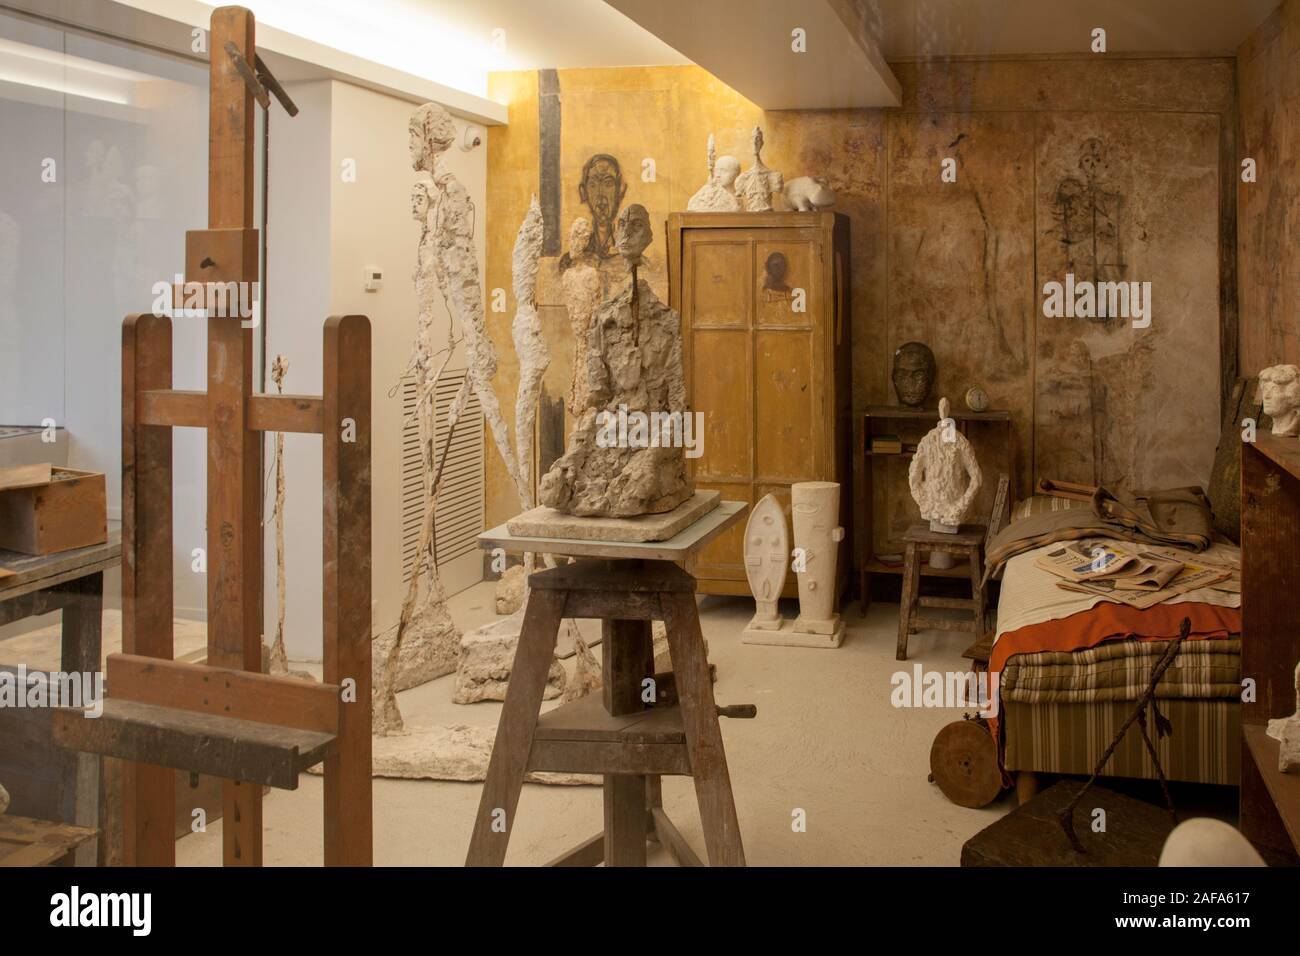 Die giacometti Institut in Montparnasse, Paris, ist ein historisches Zentrum für den Bildhauer Alberto Giacometti. Es umfasst sein rekonstruiertes Studio Stockfoto